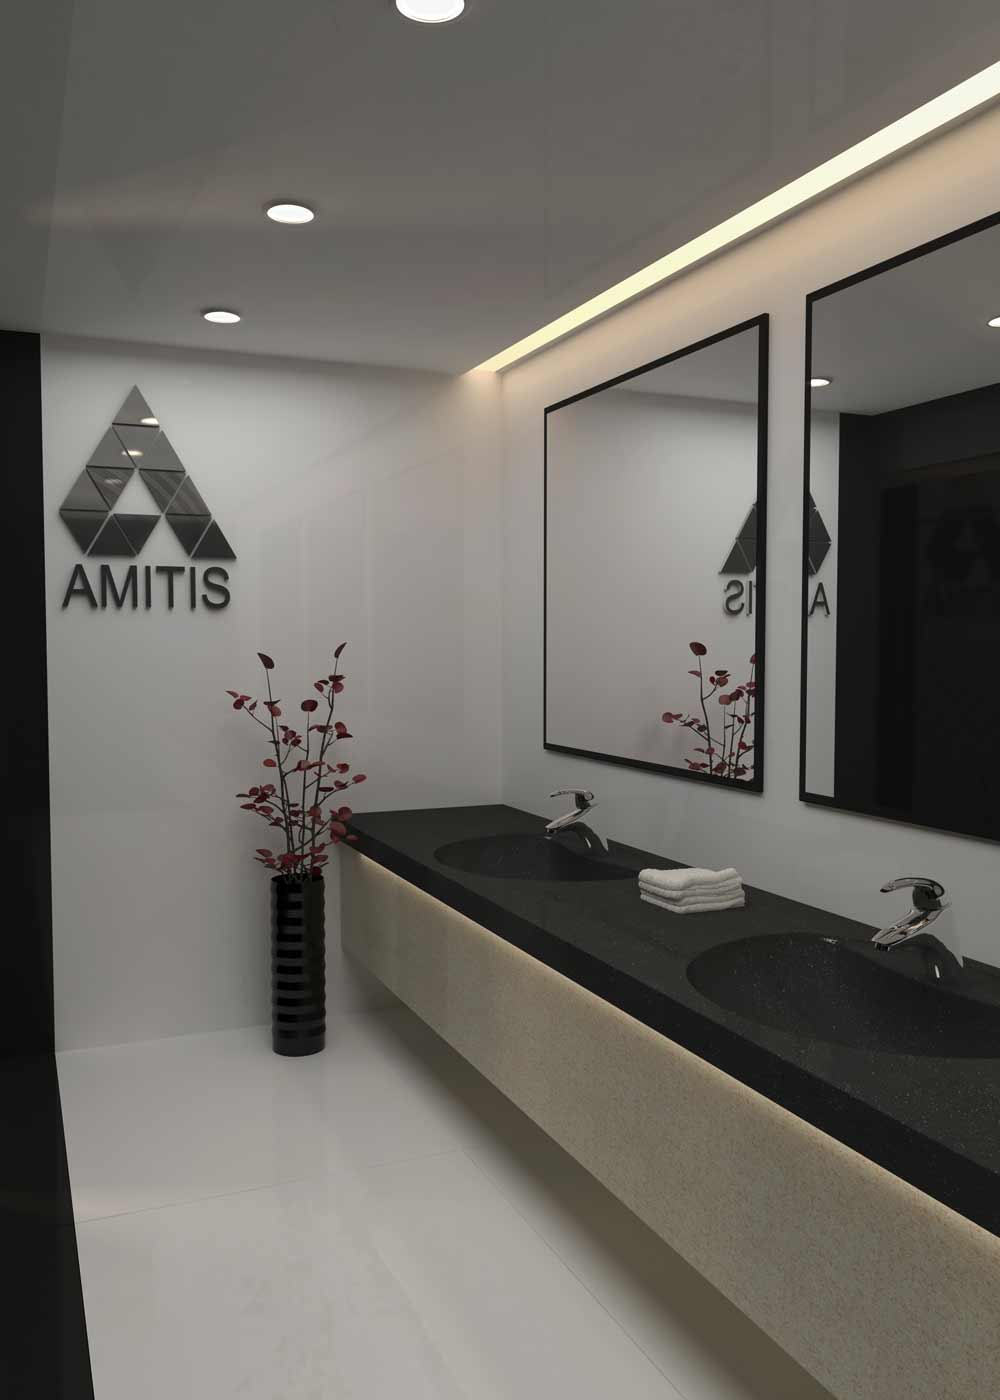 نقاء وأناقة مع اللون الأسود لأحواض غسيل Amitis المتكاملة للمراكز العامة